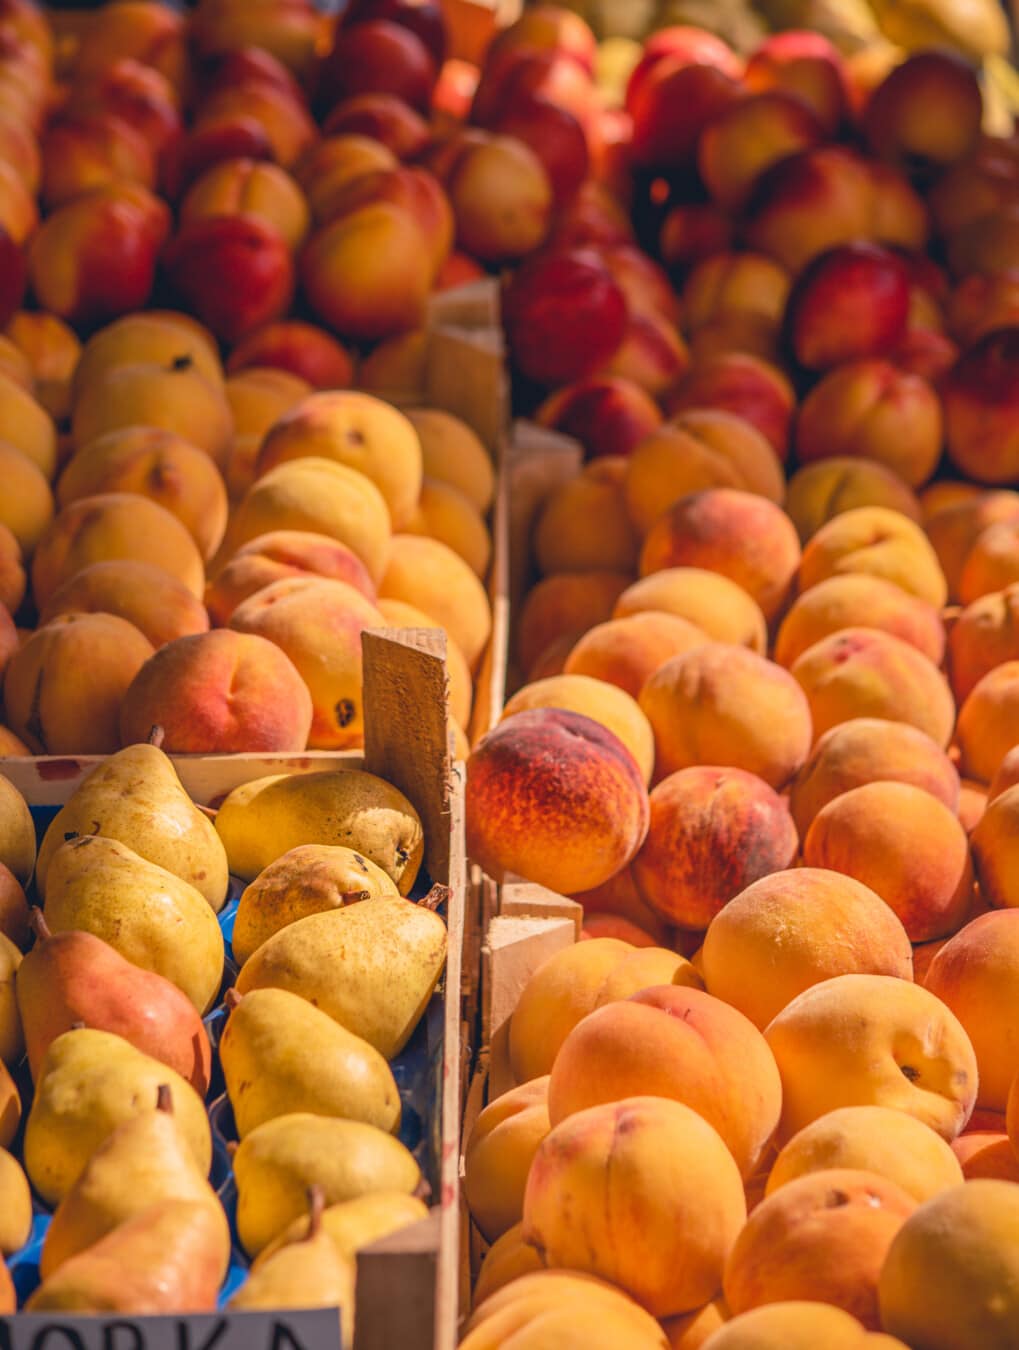 βερίκοκο, ροδάκινο, κίτρινο πορτοκαλί, ώριμα φρούτα, αγορά, βιταμίνες, αντιοξειδωτικό, τροφίμων, παράγει, φρούτα